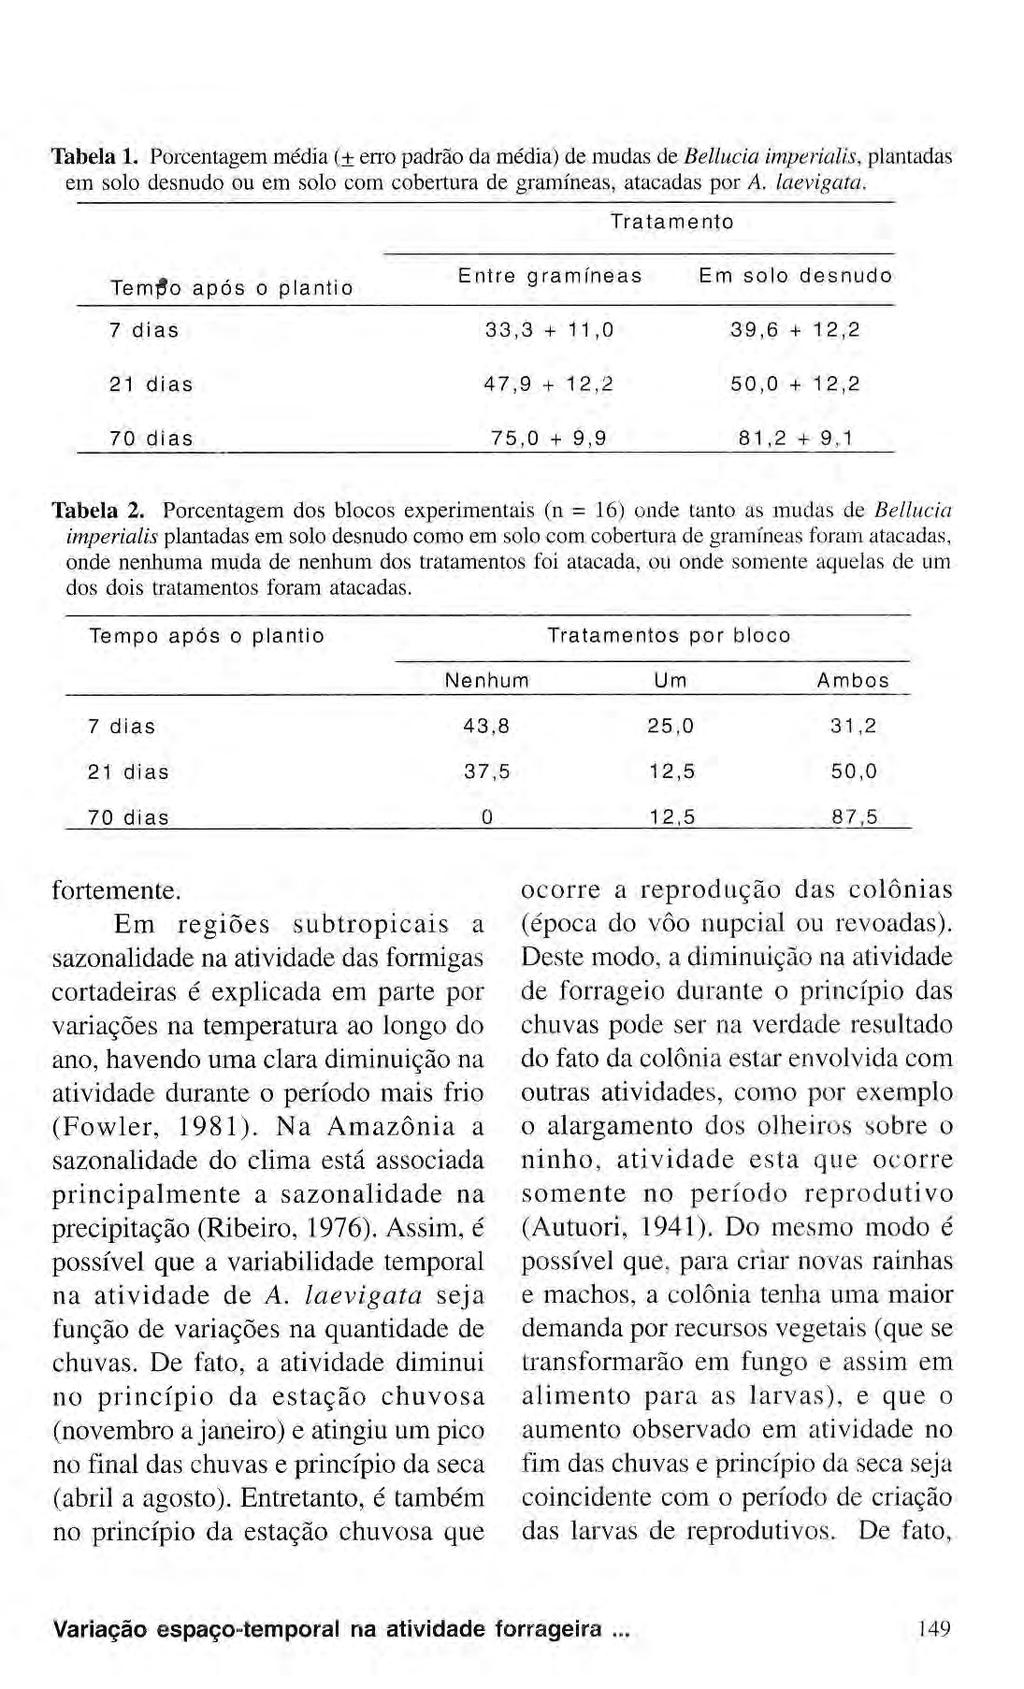 Tabela 1. Porcentagem média (± erro padrão da média) de mudas de Belinda imperialism plantadas em solo desnudo ou em solo com cobertura de gramíneas, atacadas por A. laevigata.